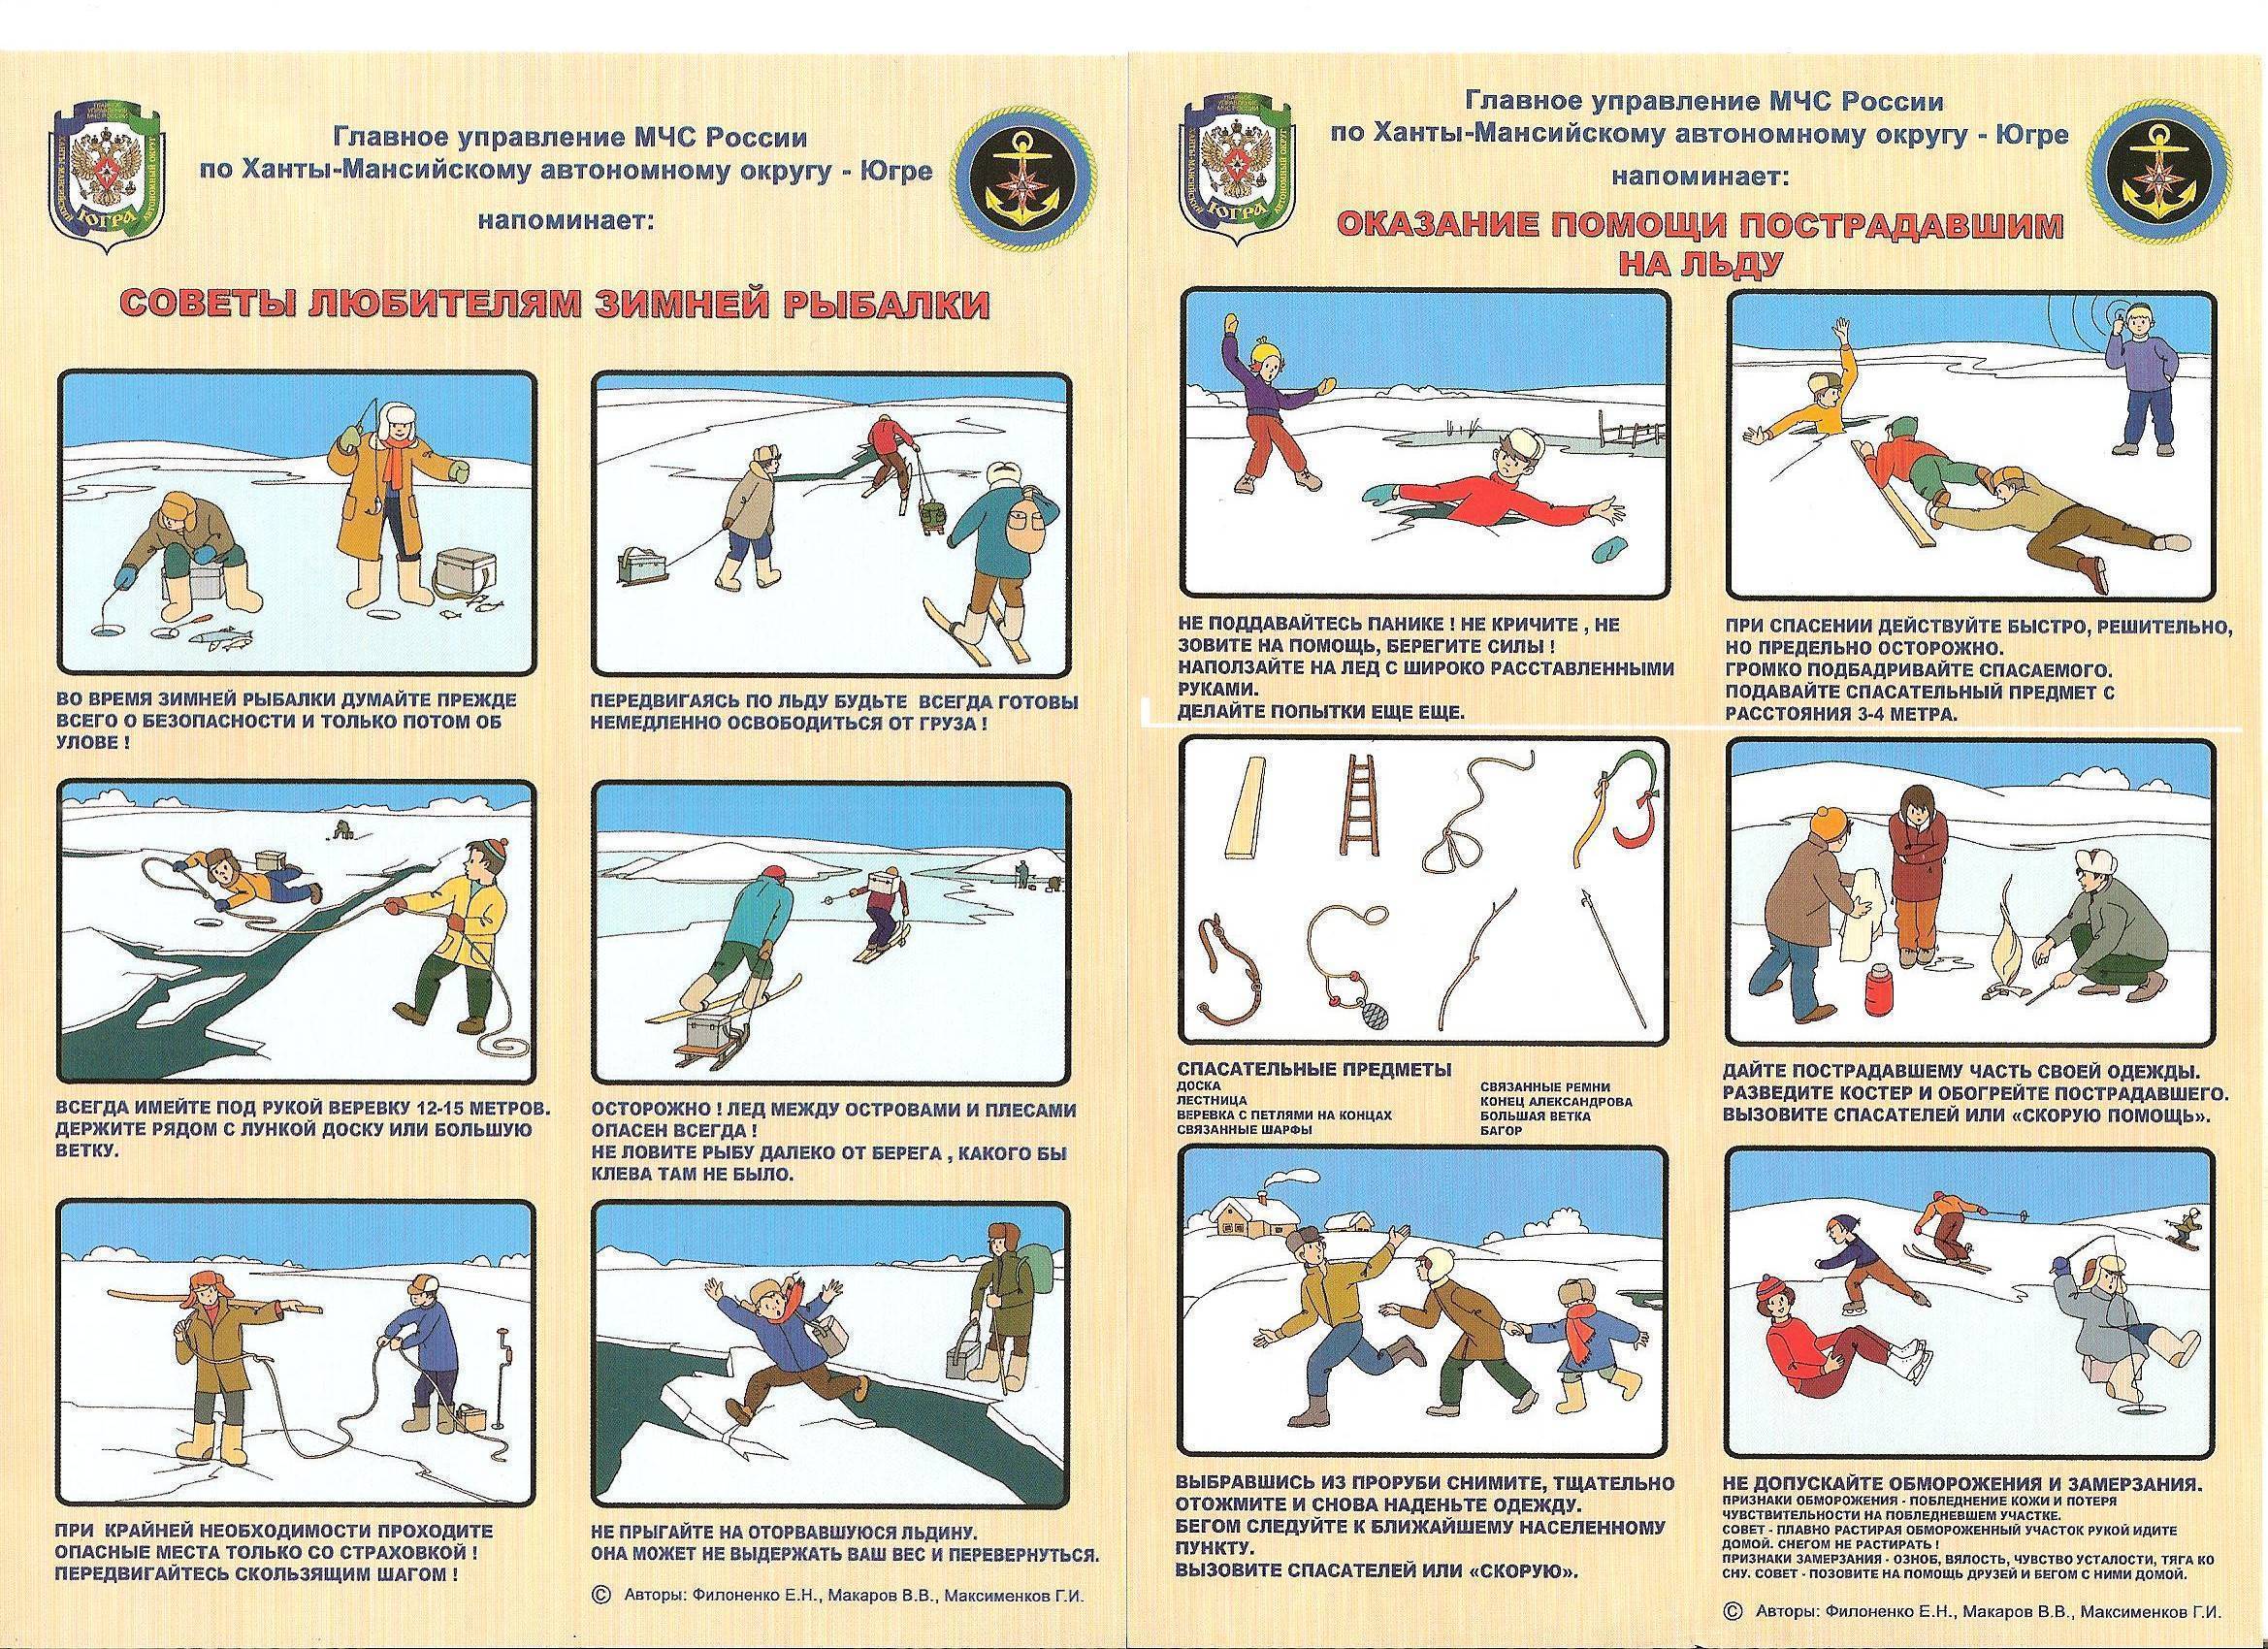 Правила безопасности на льду для любителей зимней рыбалки